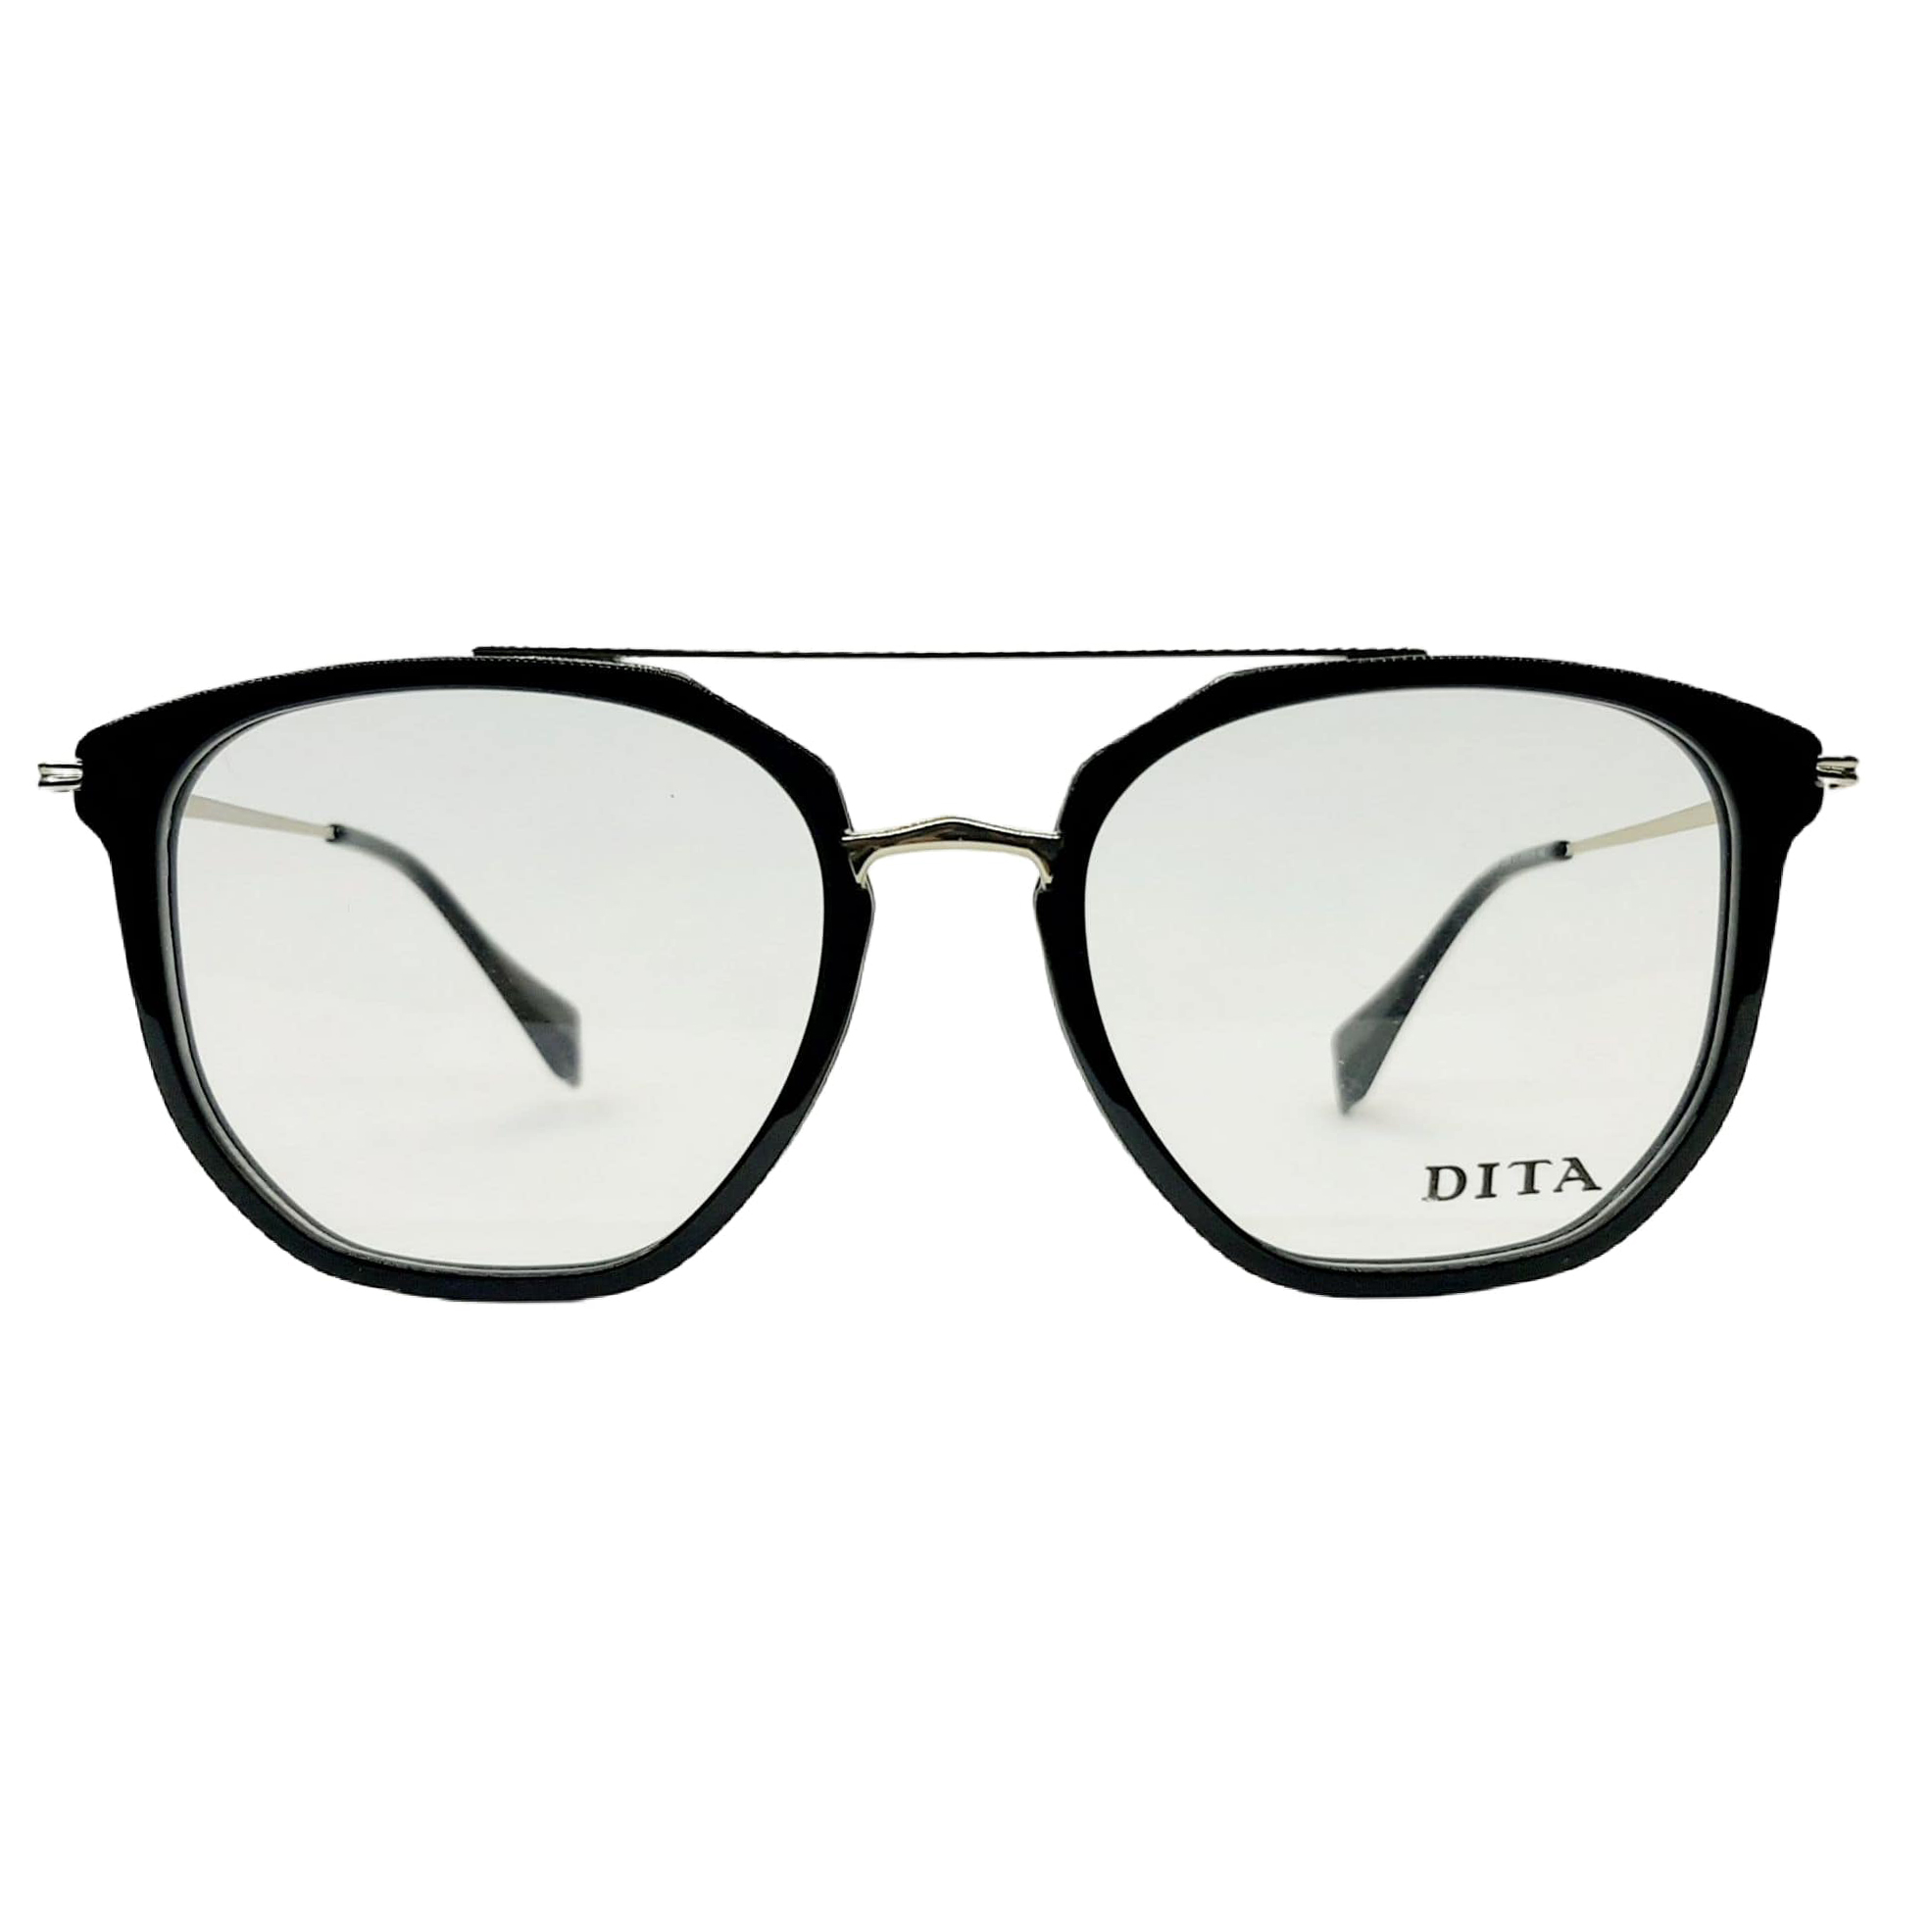 فریم عینک طبی دیتا مدل W56130col.01